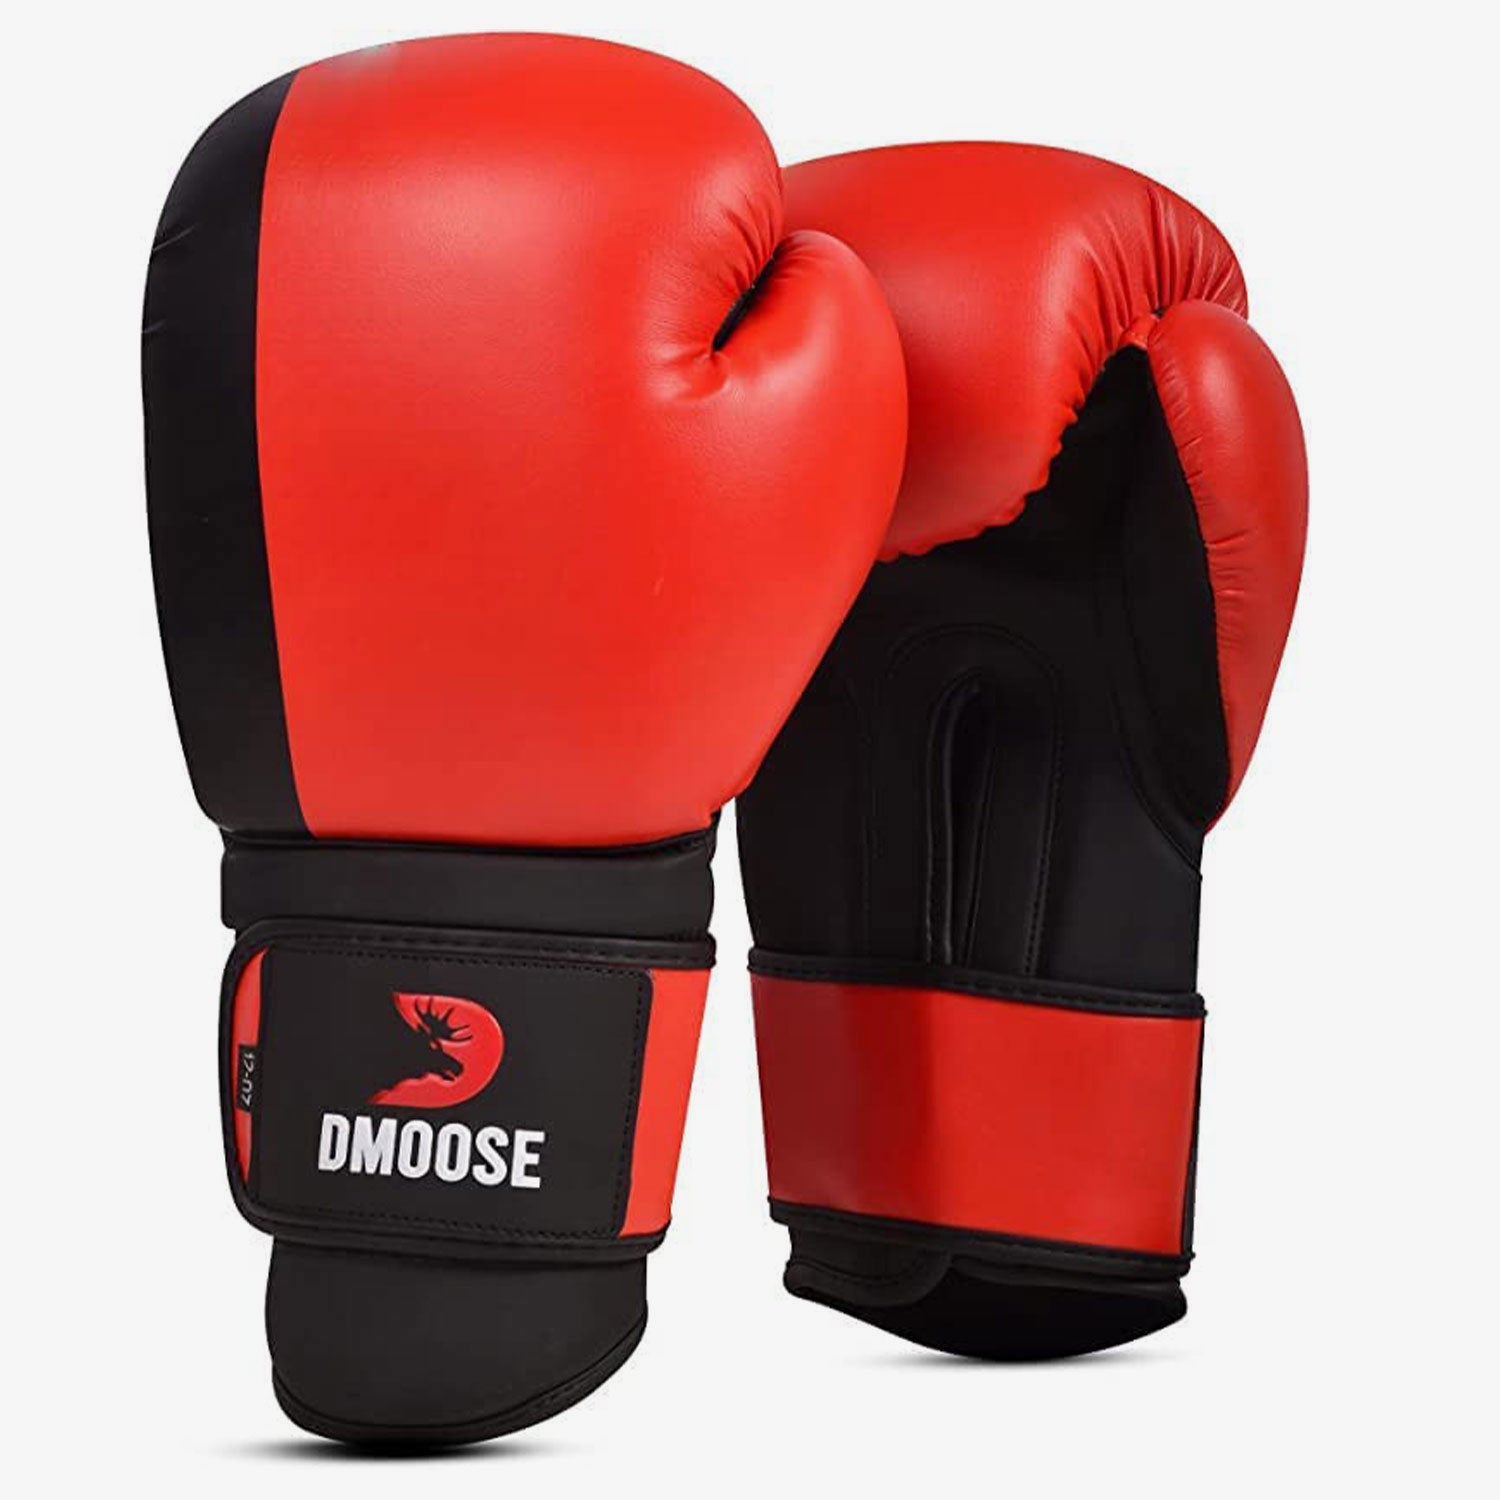 DMoose Boxing Gloves 16oz